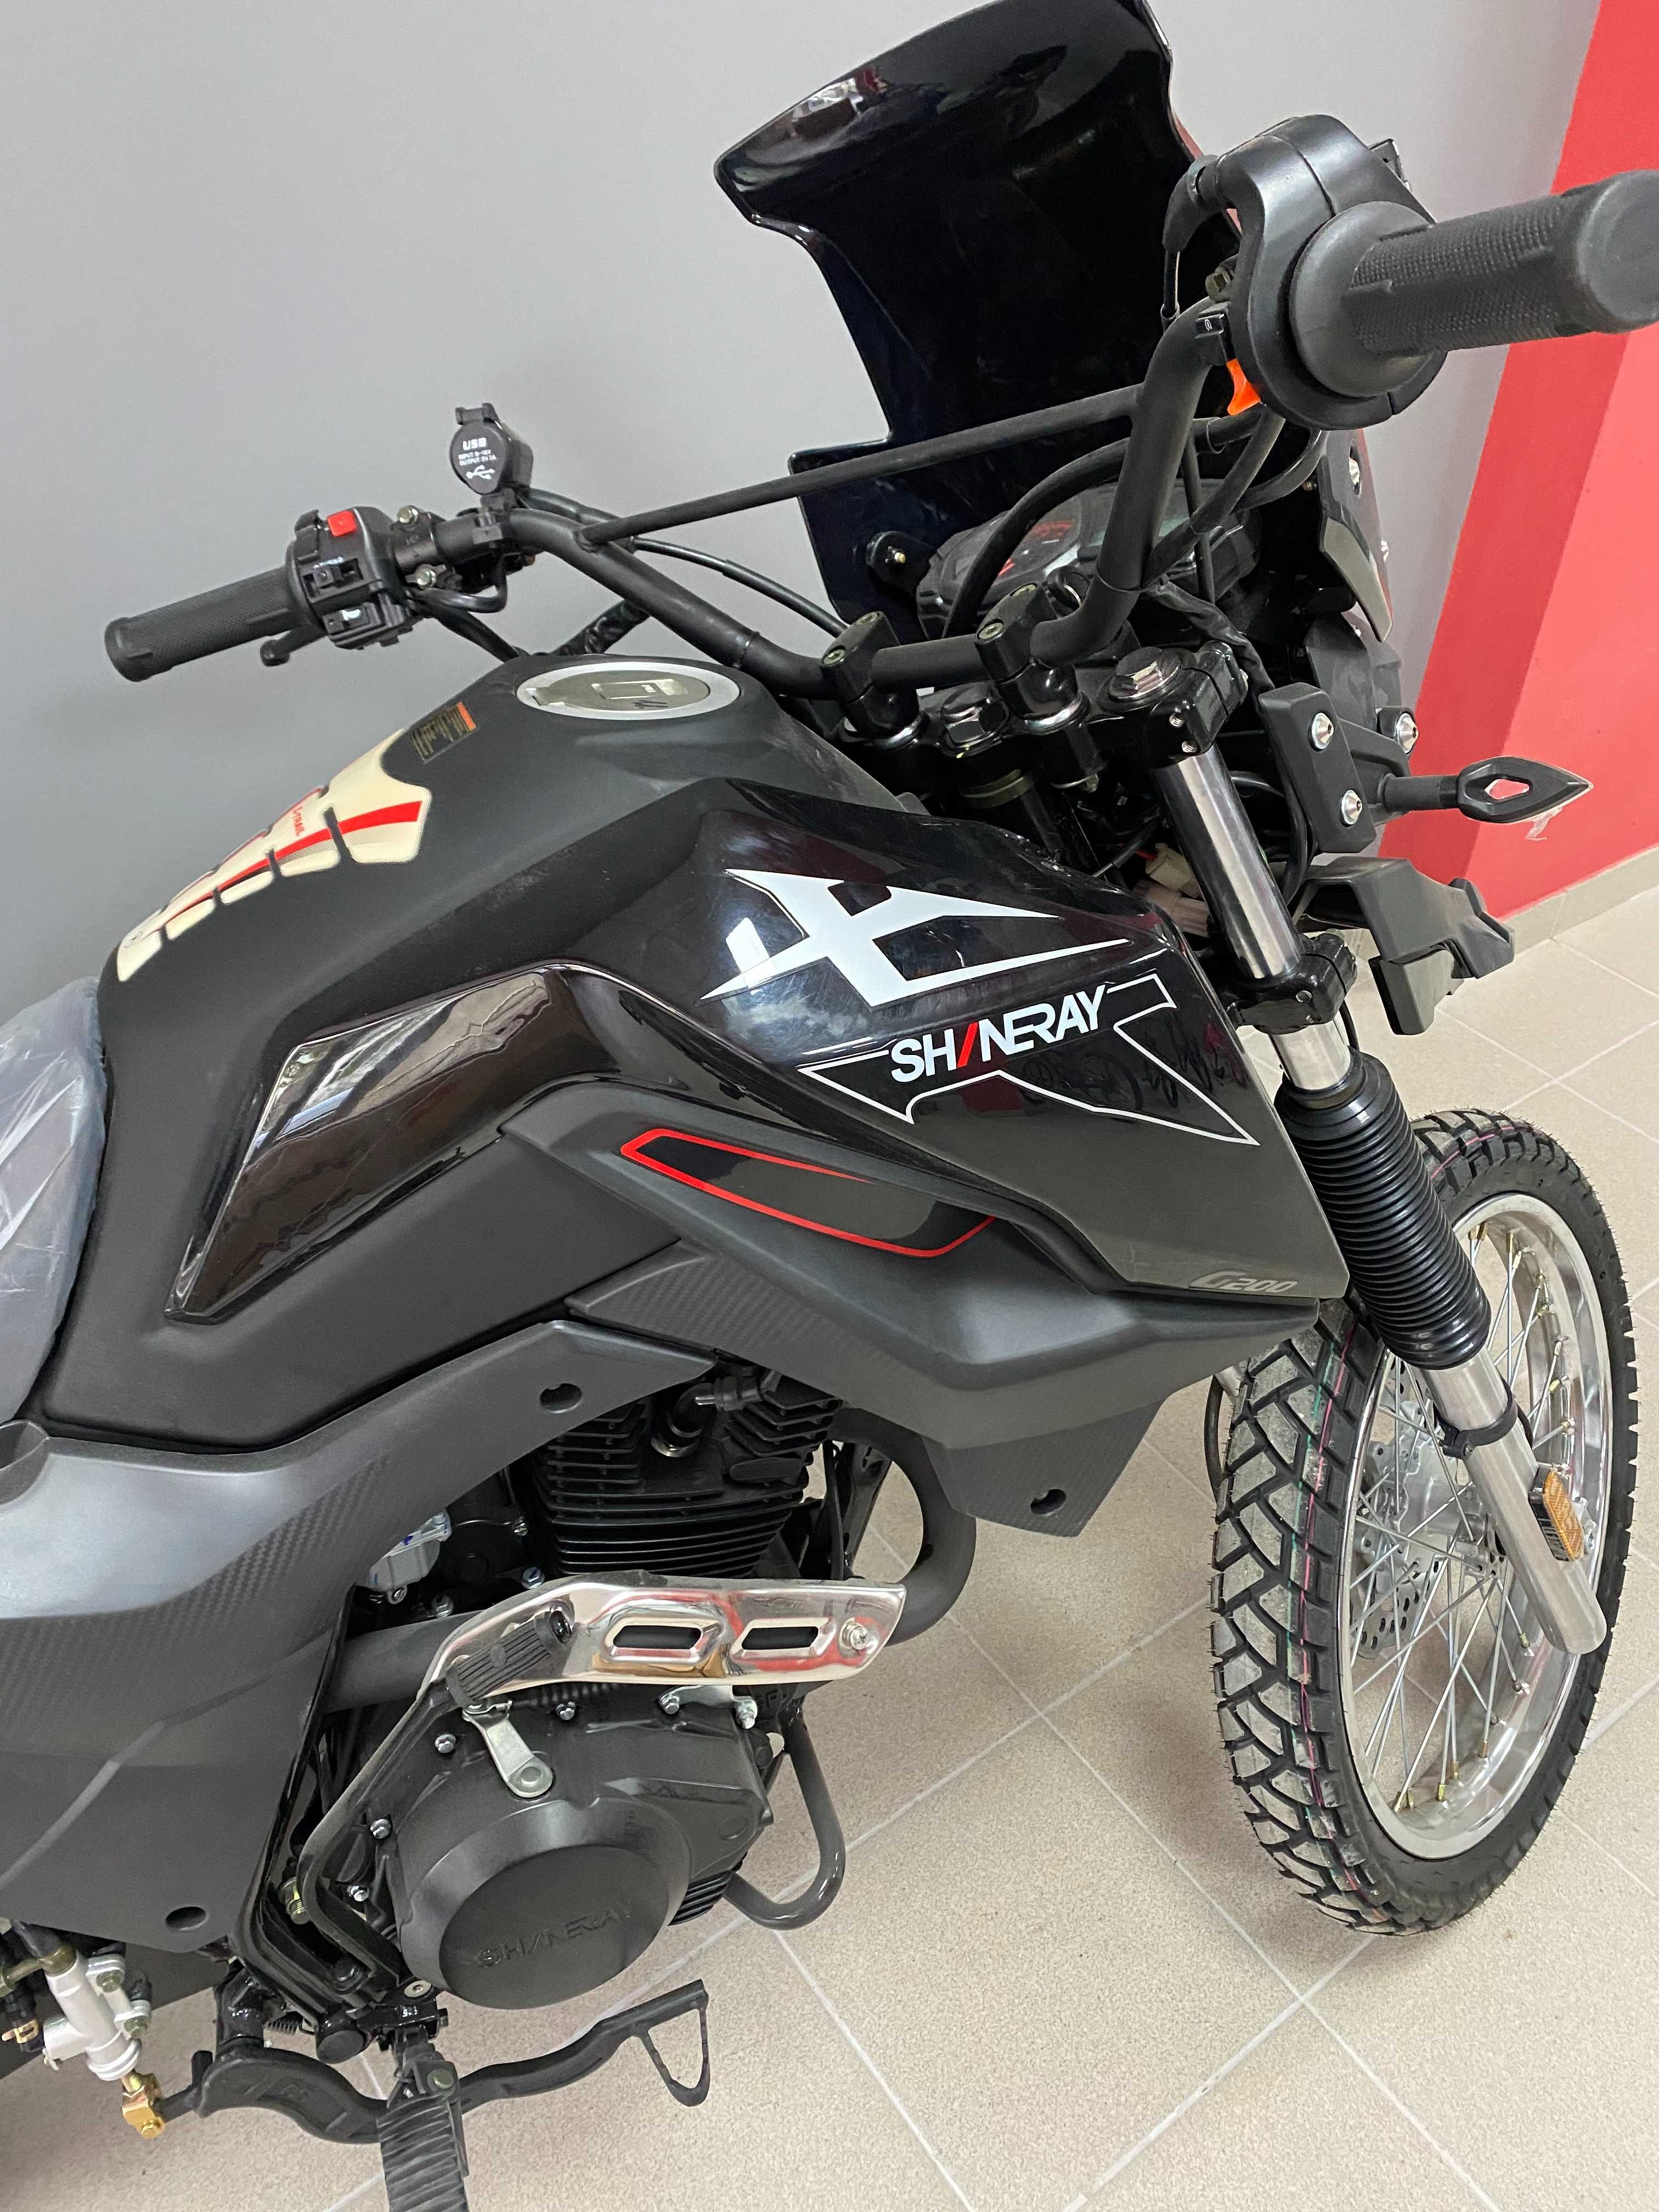 Мотоцикл - Shineray XY 200GY-9A (X-TRAIL 200)